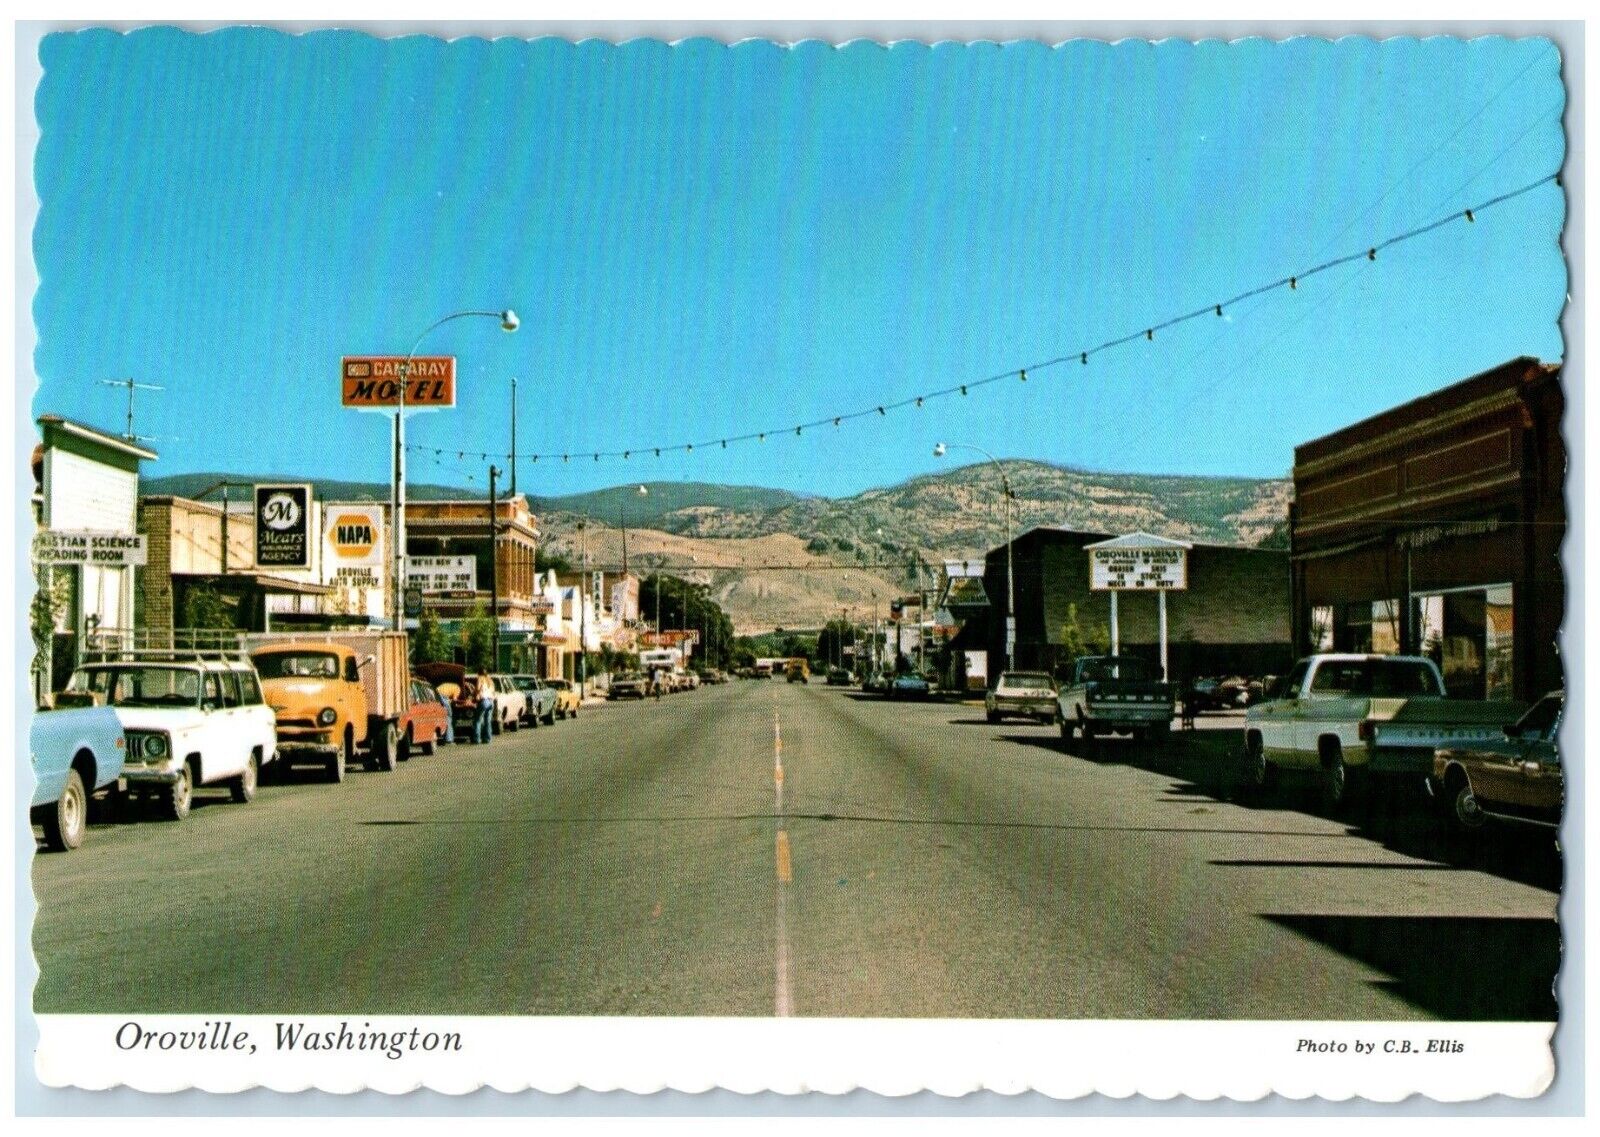 Oroville Washington WA Postcard Main Street Camaray Motel Napa Mears Agency Cars